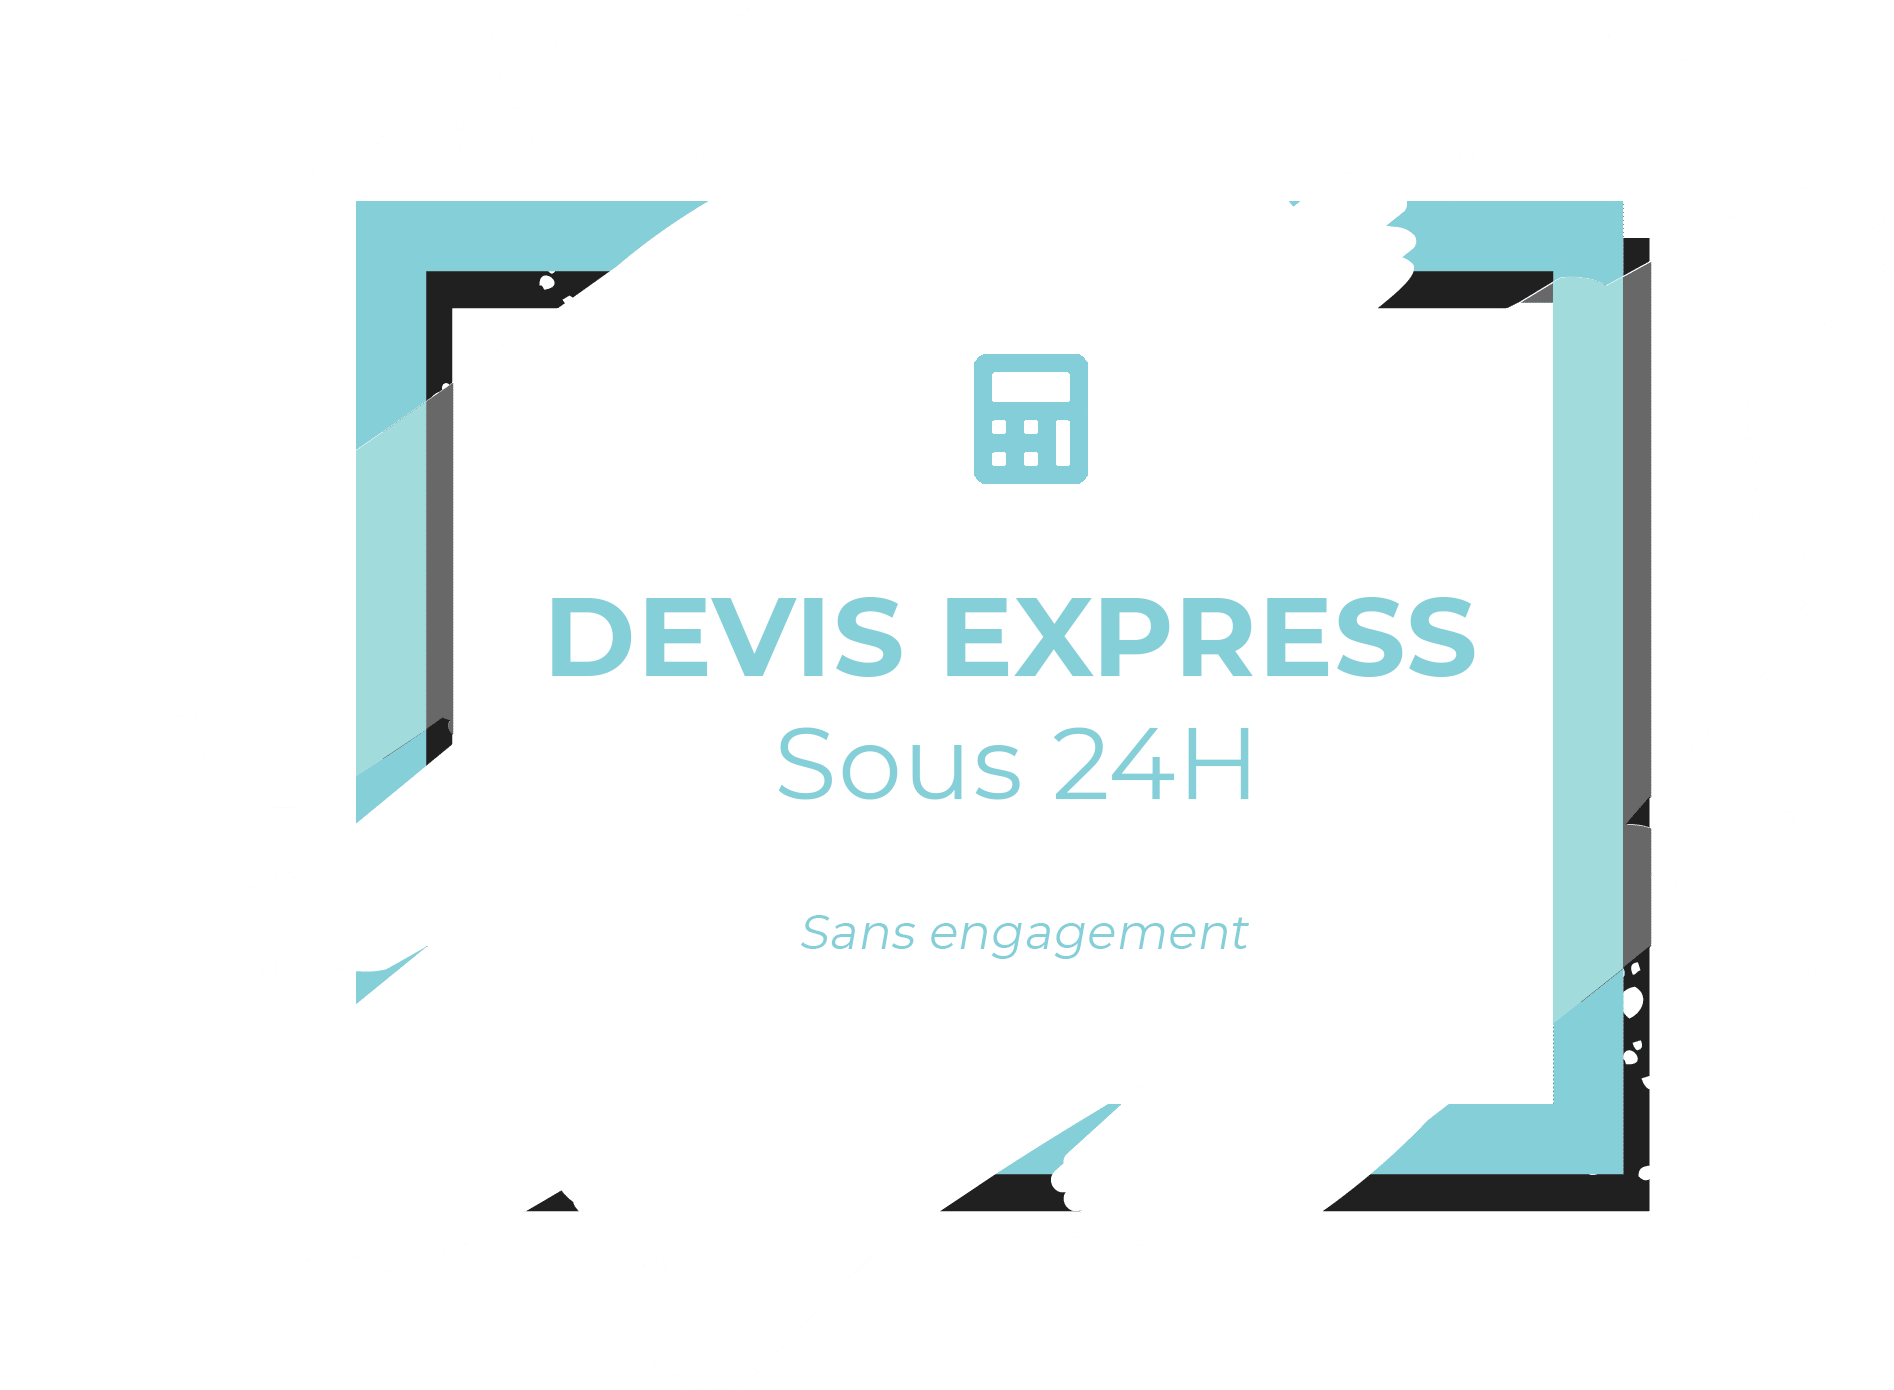 Devis Express